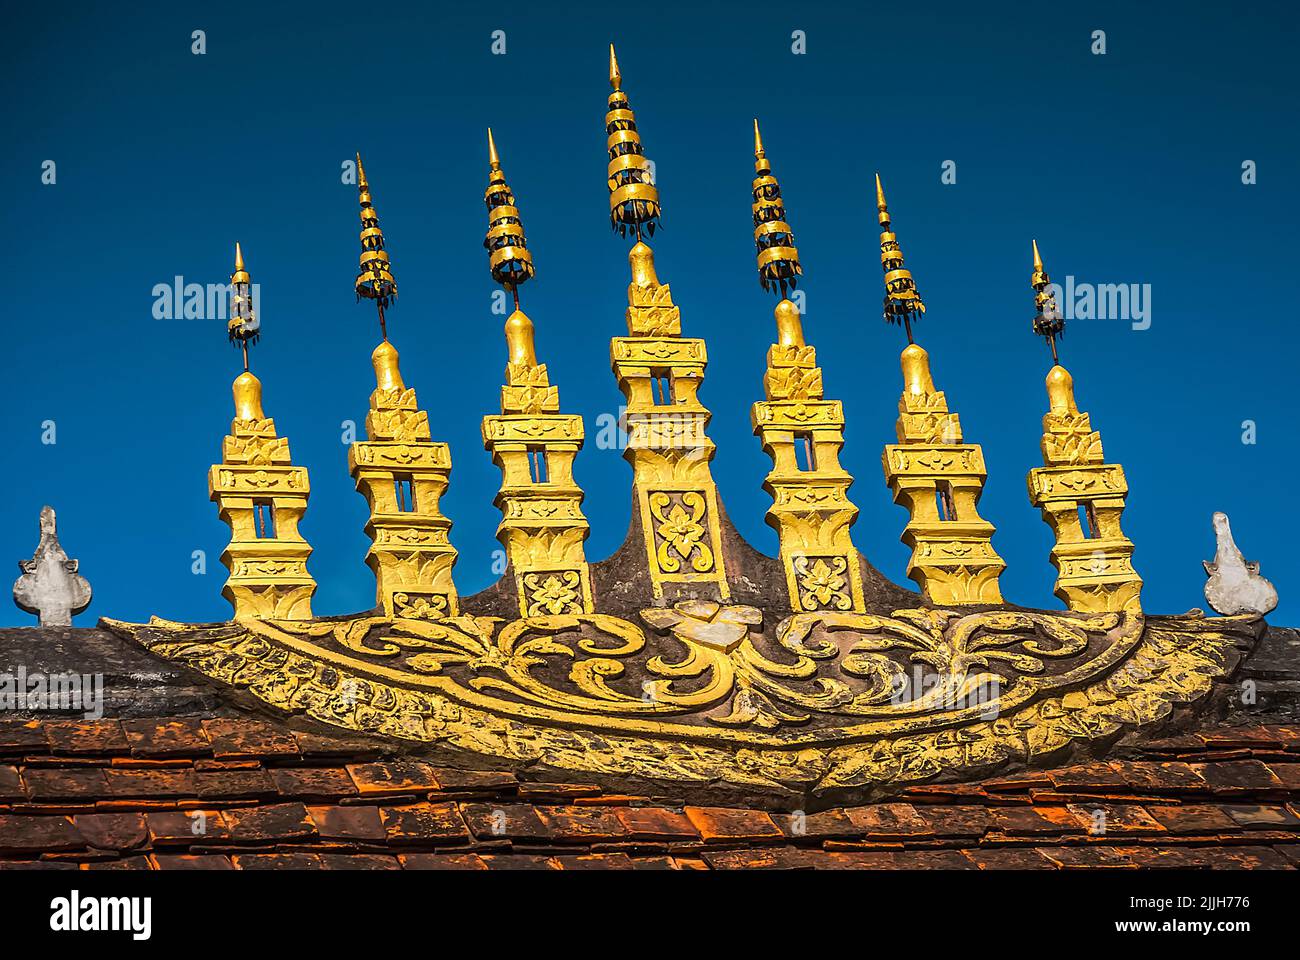 Un 'ok so fa' così called in Luang Prabang, ornamenti dorati del tetto che si trovano nel centro della trave del tetto e rappresentano l'universo buddista Foto Stock